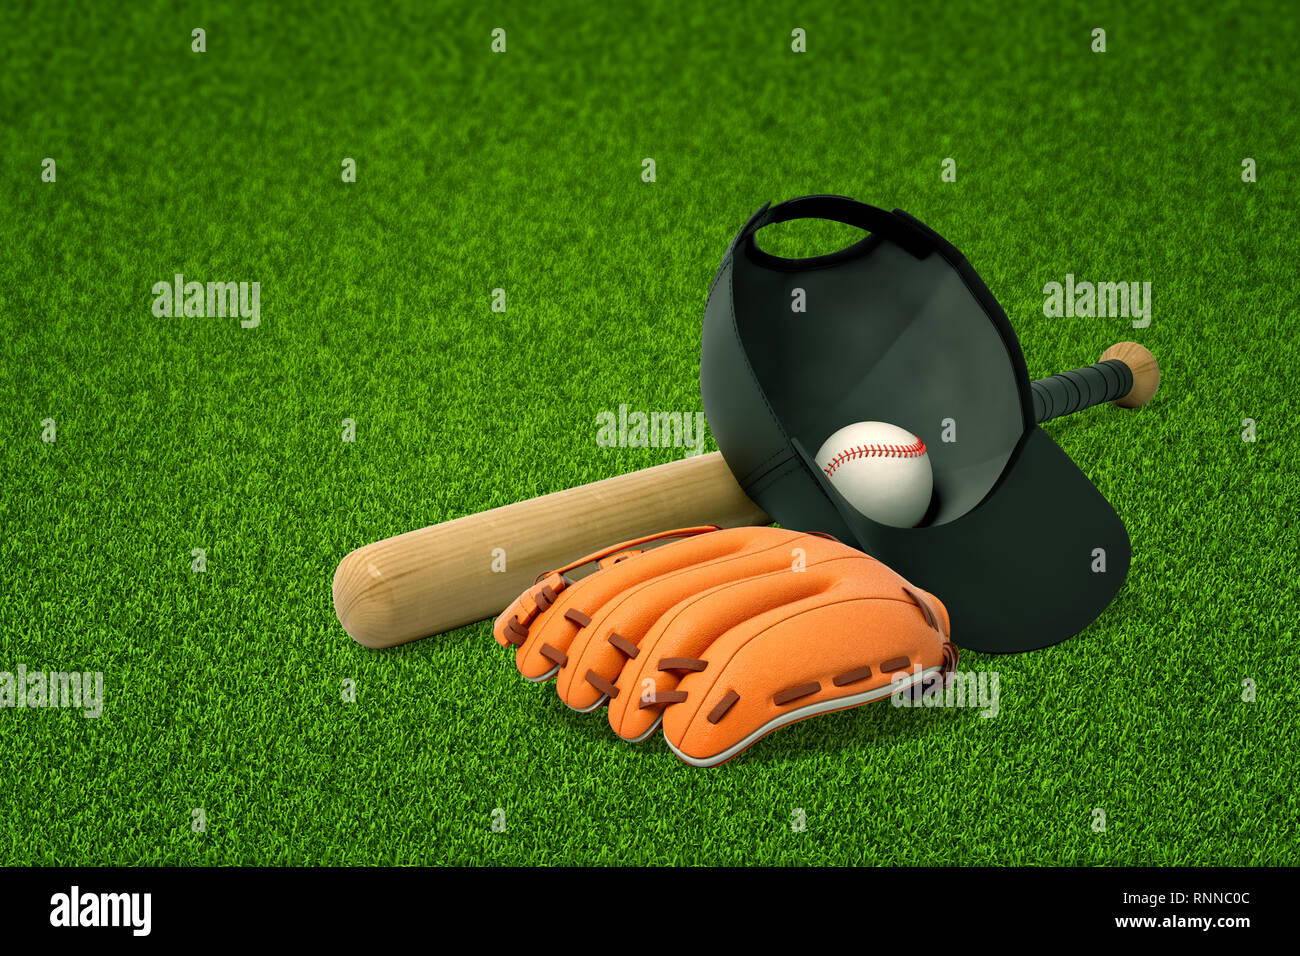 Le rendu 3D d'une batte de baseball, un bouchon avec une balle de baseball à l'intérieur, et un gant de baseball située sur les pelouses vertes. Faire du sport. L'esprit d'équipe. Restez actif un Banque D'Images